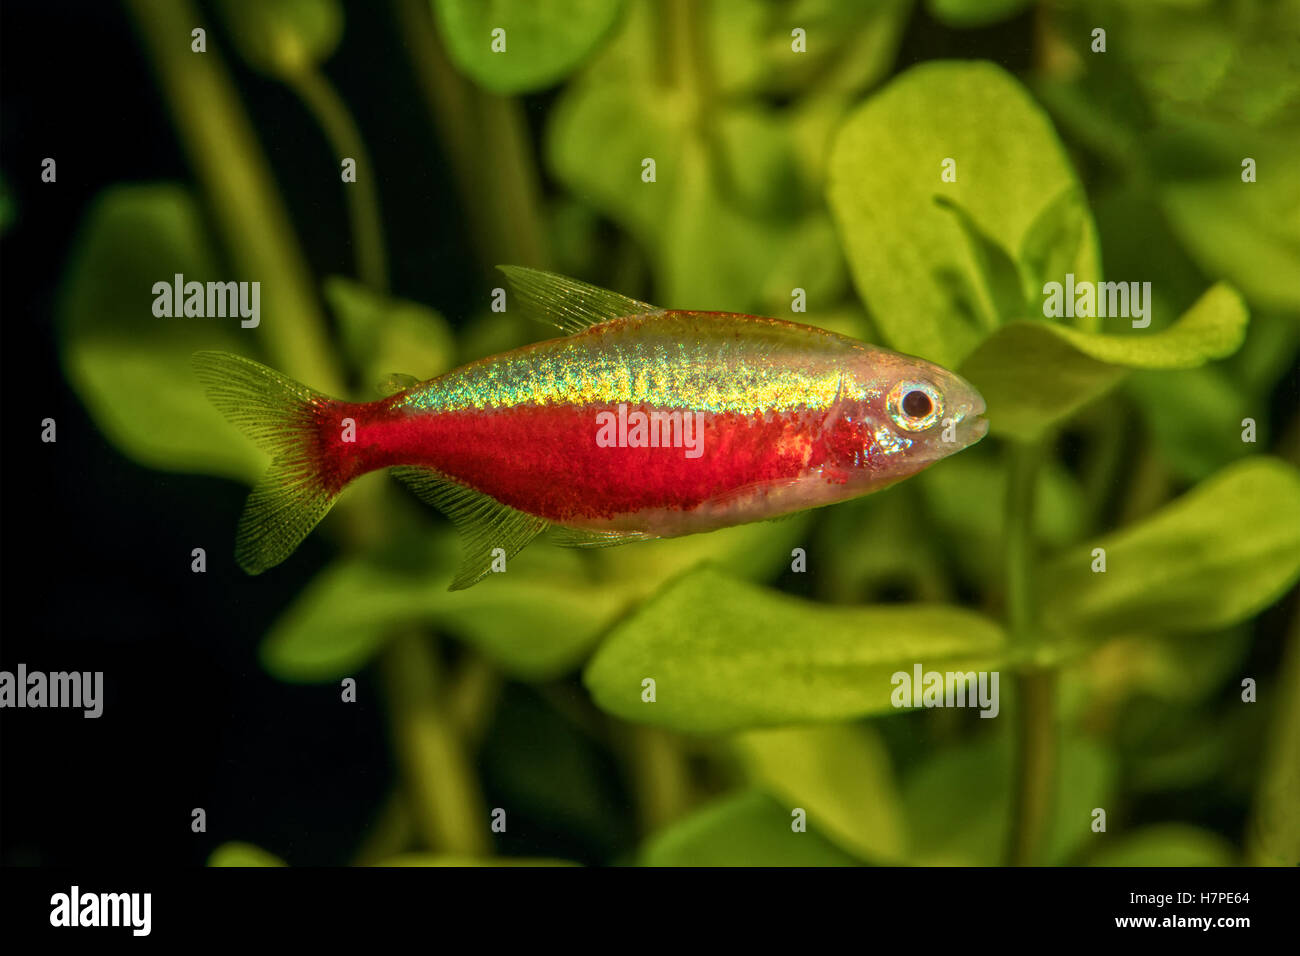 Portrait of freshwater neon tetra fish (Paracheirodon axelrodi) in aquarium Stock Photo